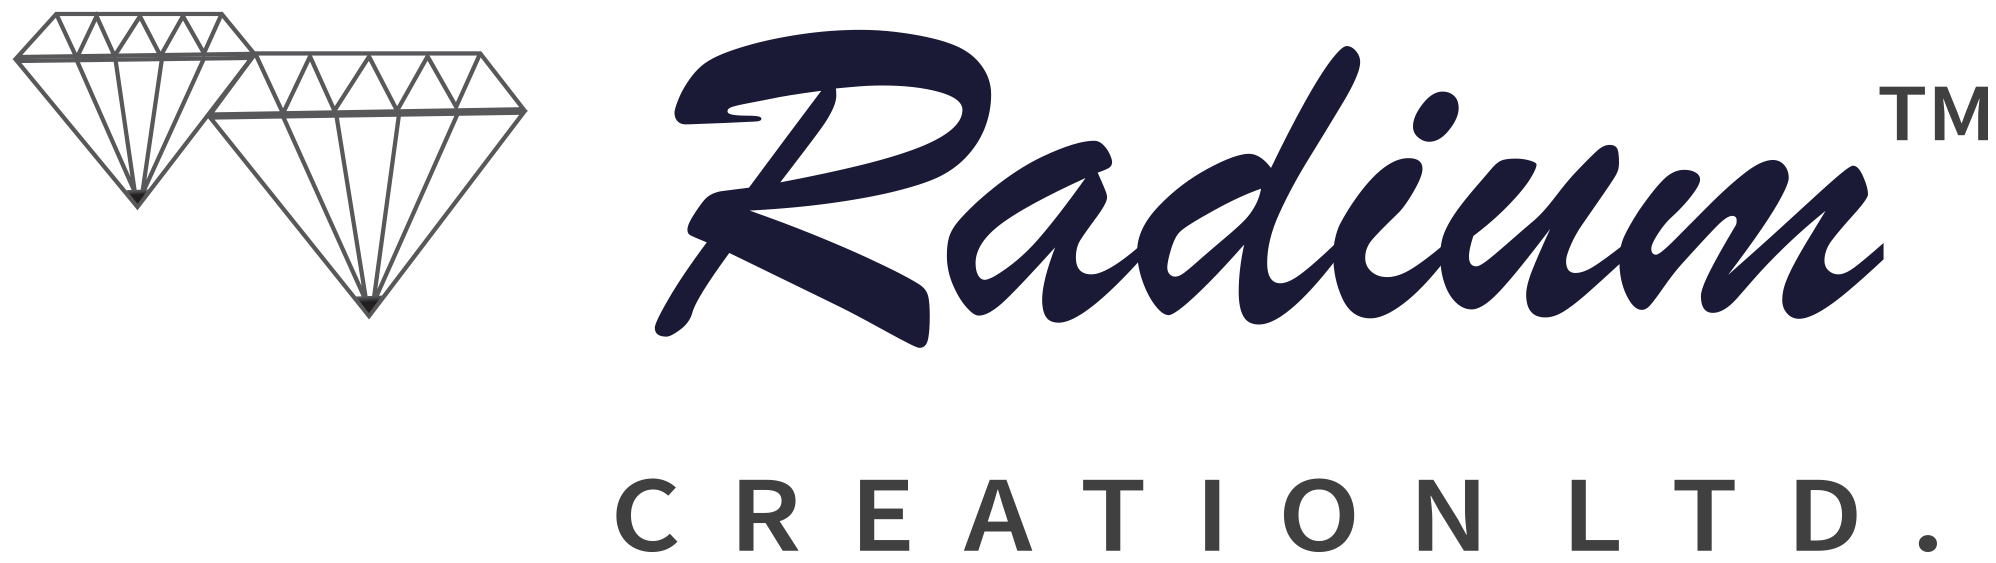 radium-logo.png